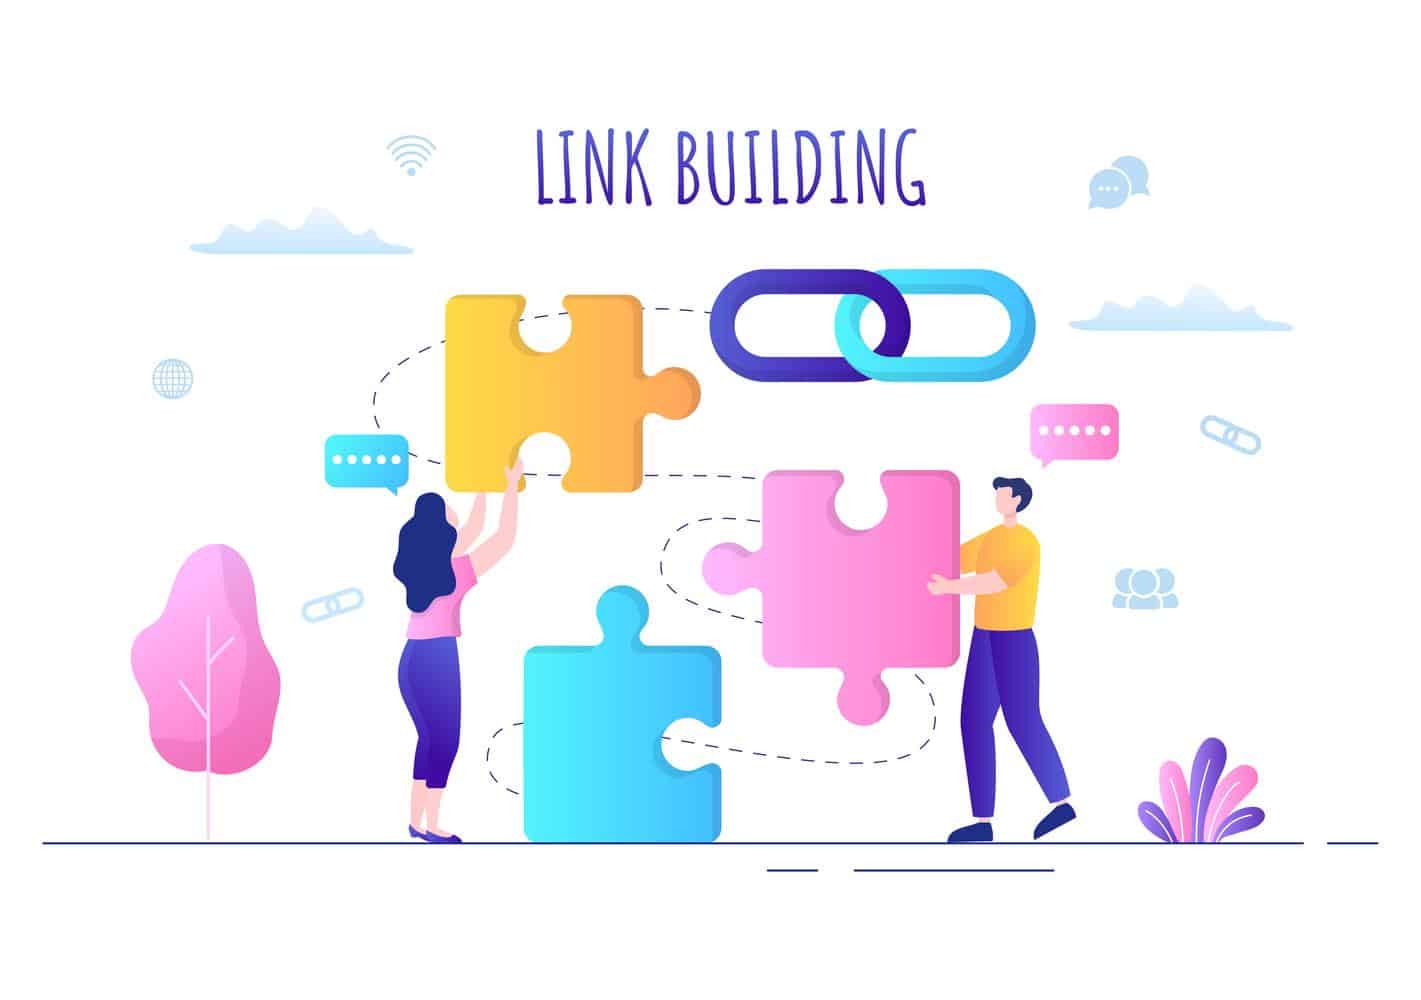 Waarom is linkbuilding belangrijk?